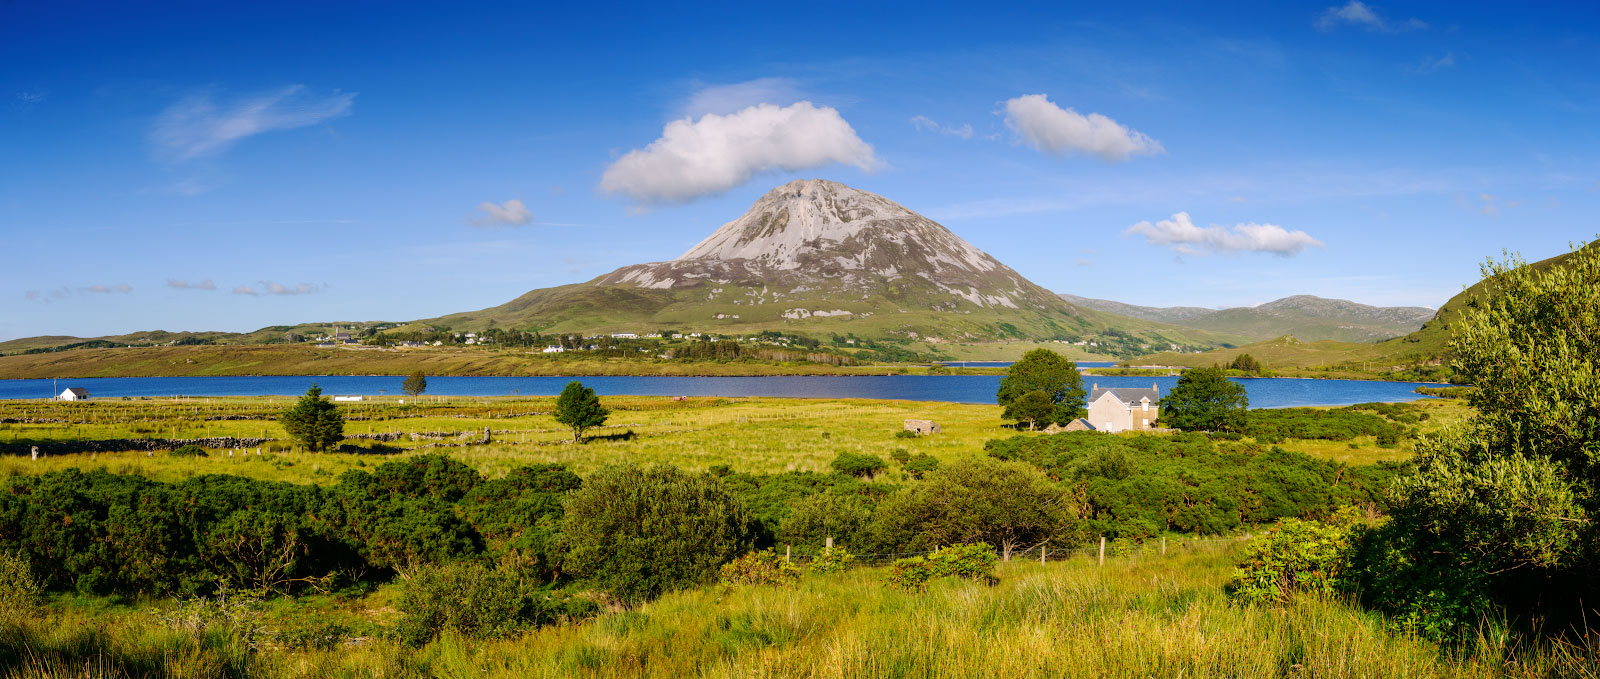 фото "Panoramic landscape with Mount Errigal" метки: панорама, пейзаж, природа, Errigal, Ireland, Европа, Ирландия, Эрригал, вода, горы, облака, озеро, растение, свет, цвет